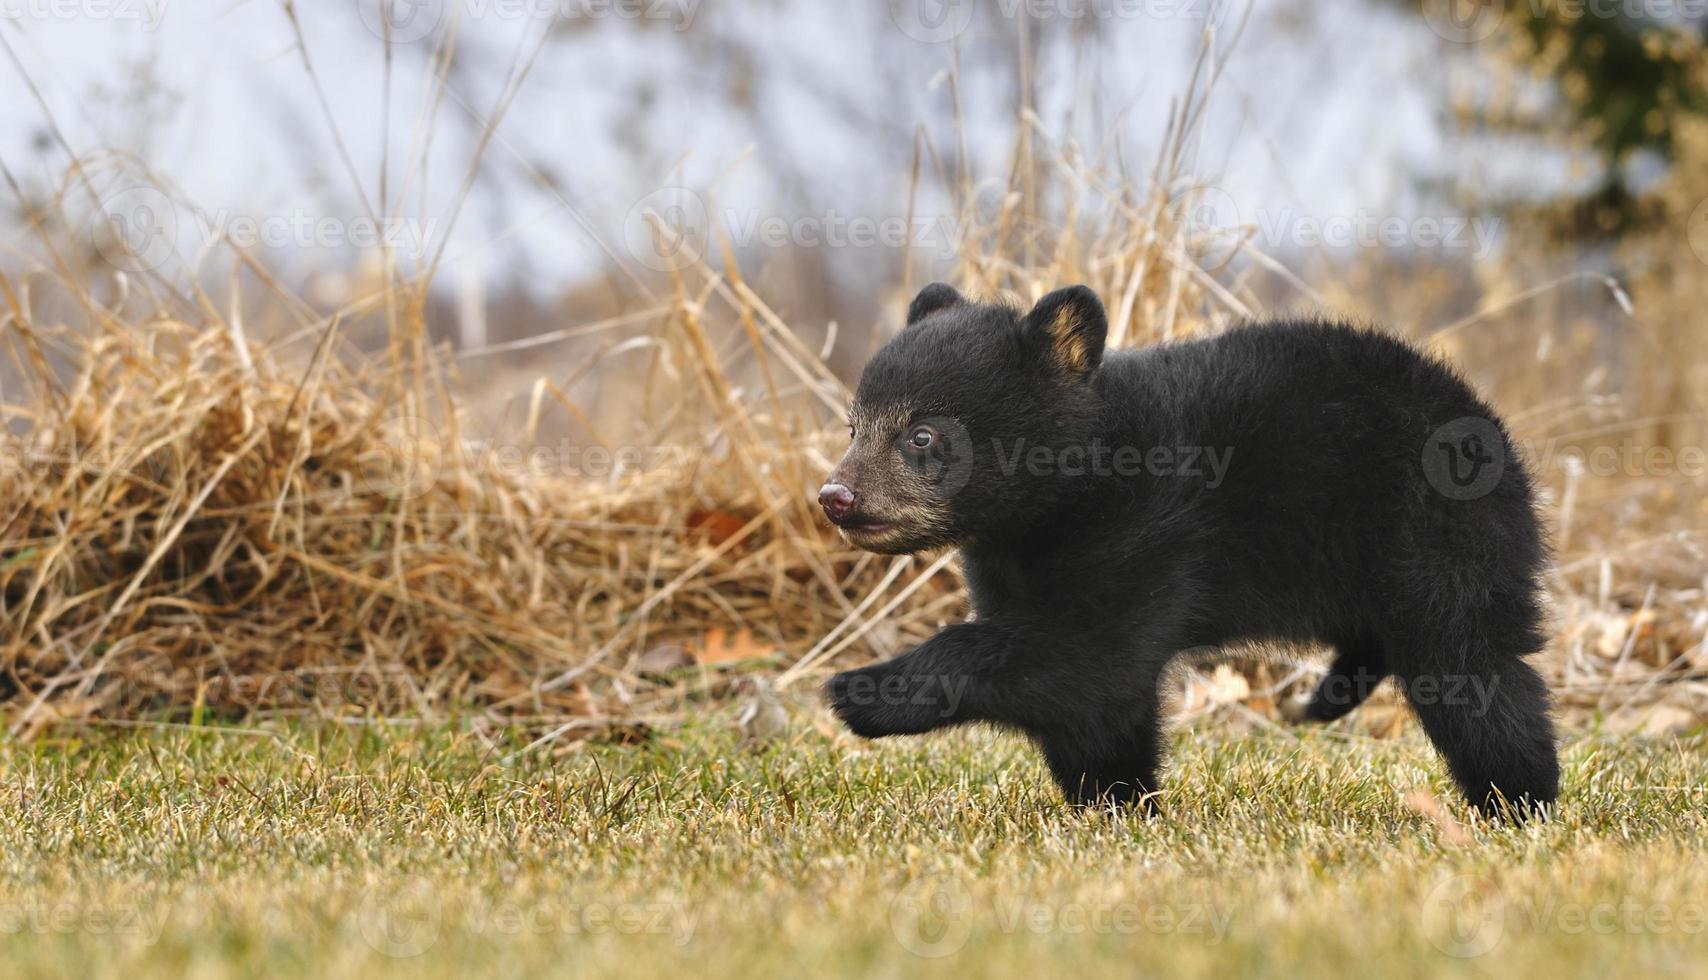 ourson noir américain (ursus americanus) traverse l'herbe photo